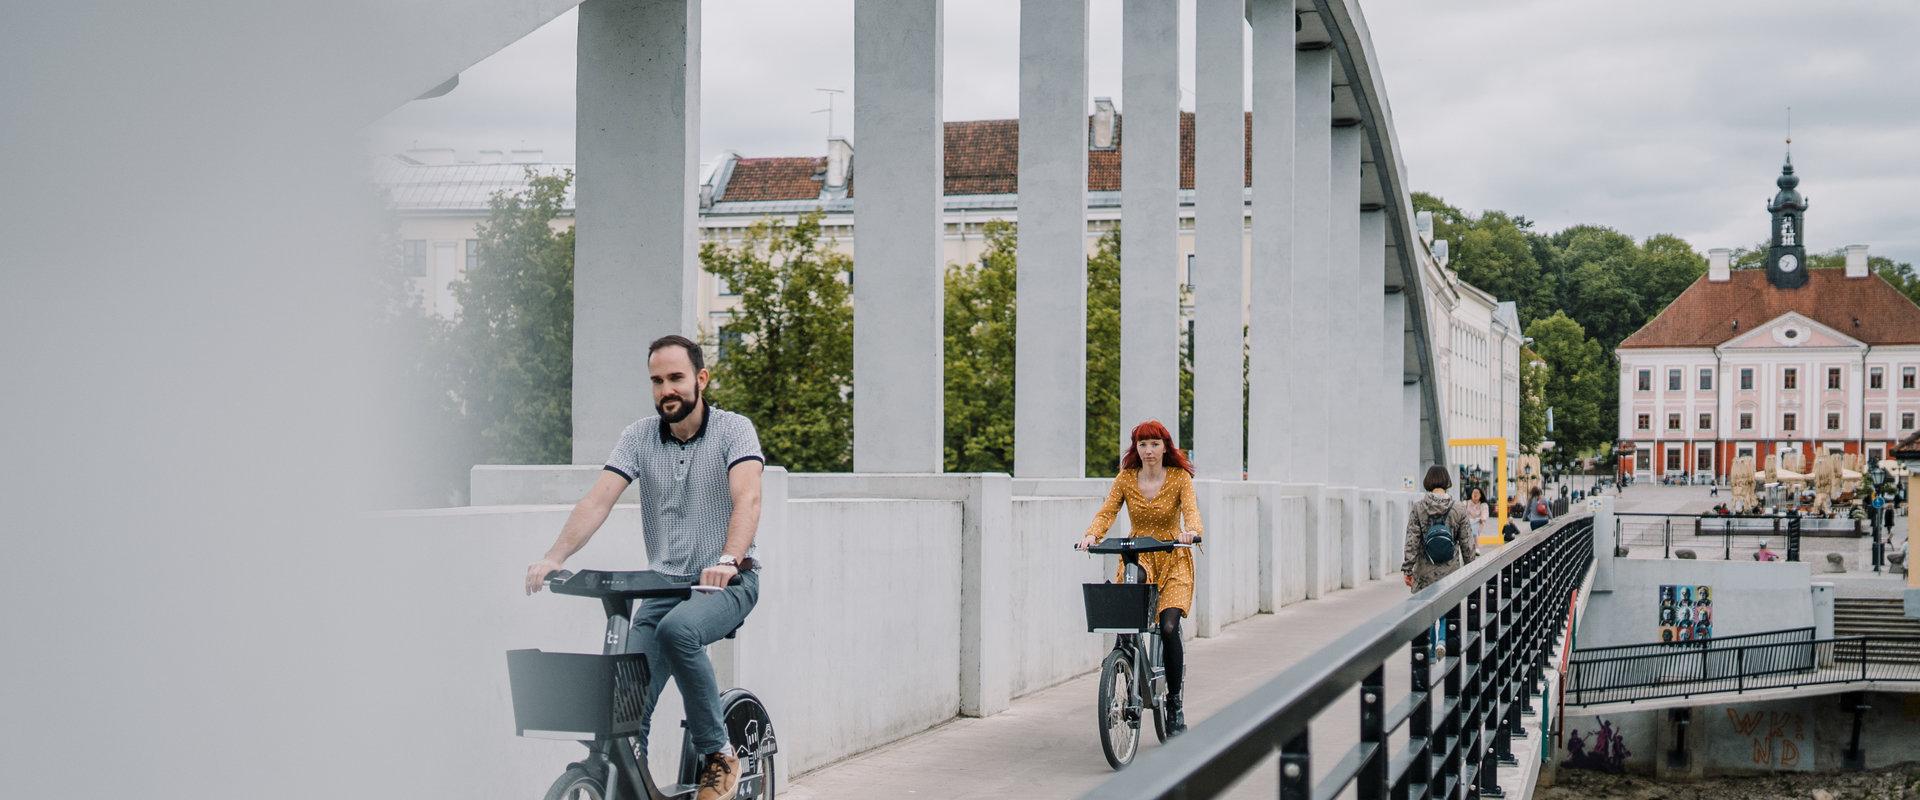 Kesäinen Kaarsild (Kaarisilta) ja Tarton pyöräpalvelun pyörillä ajelevat nuoret